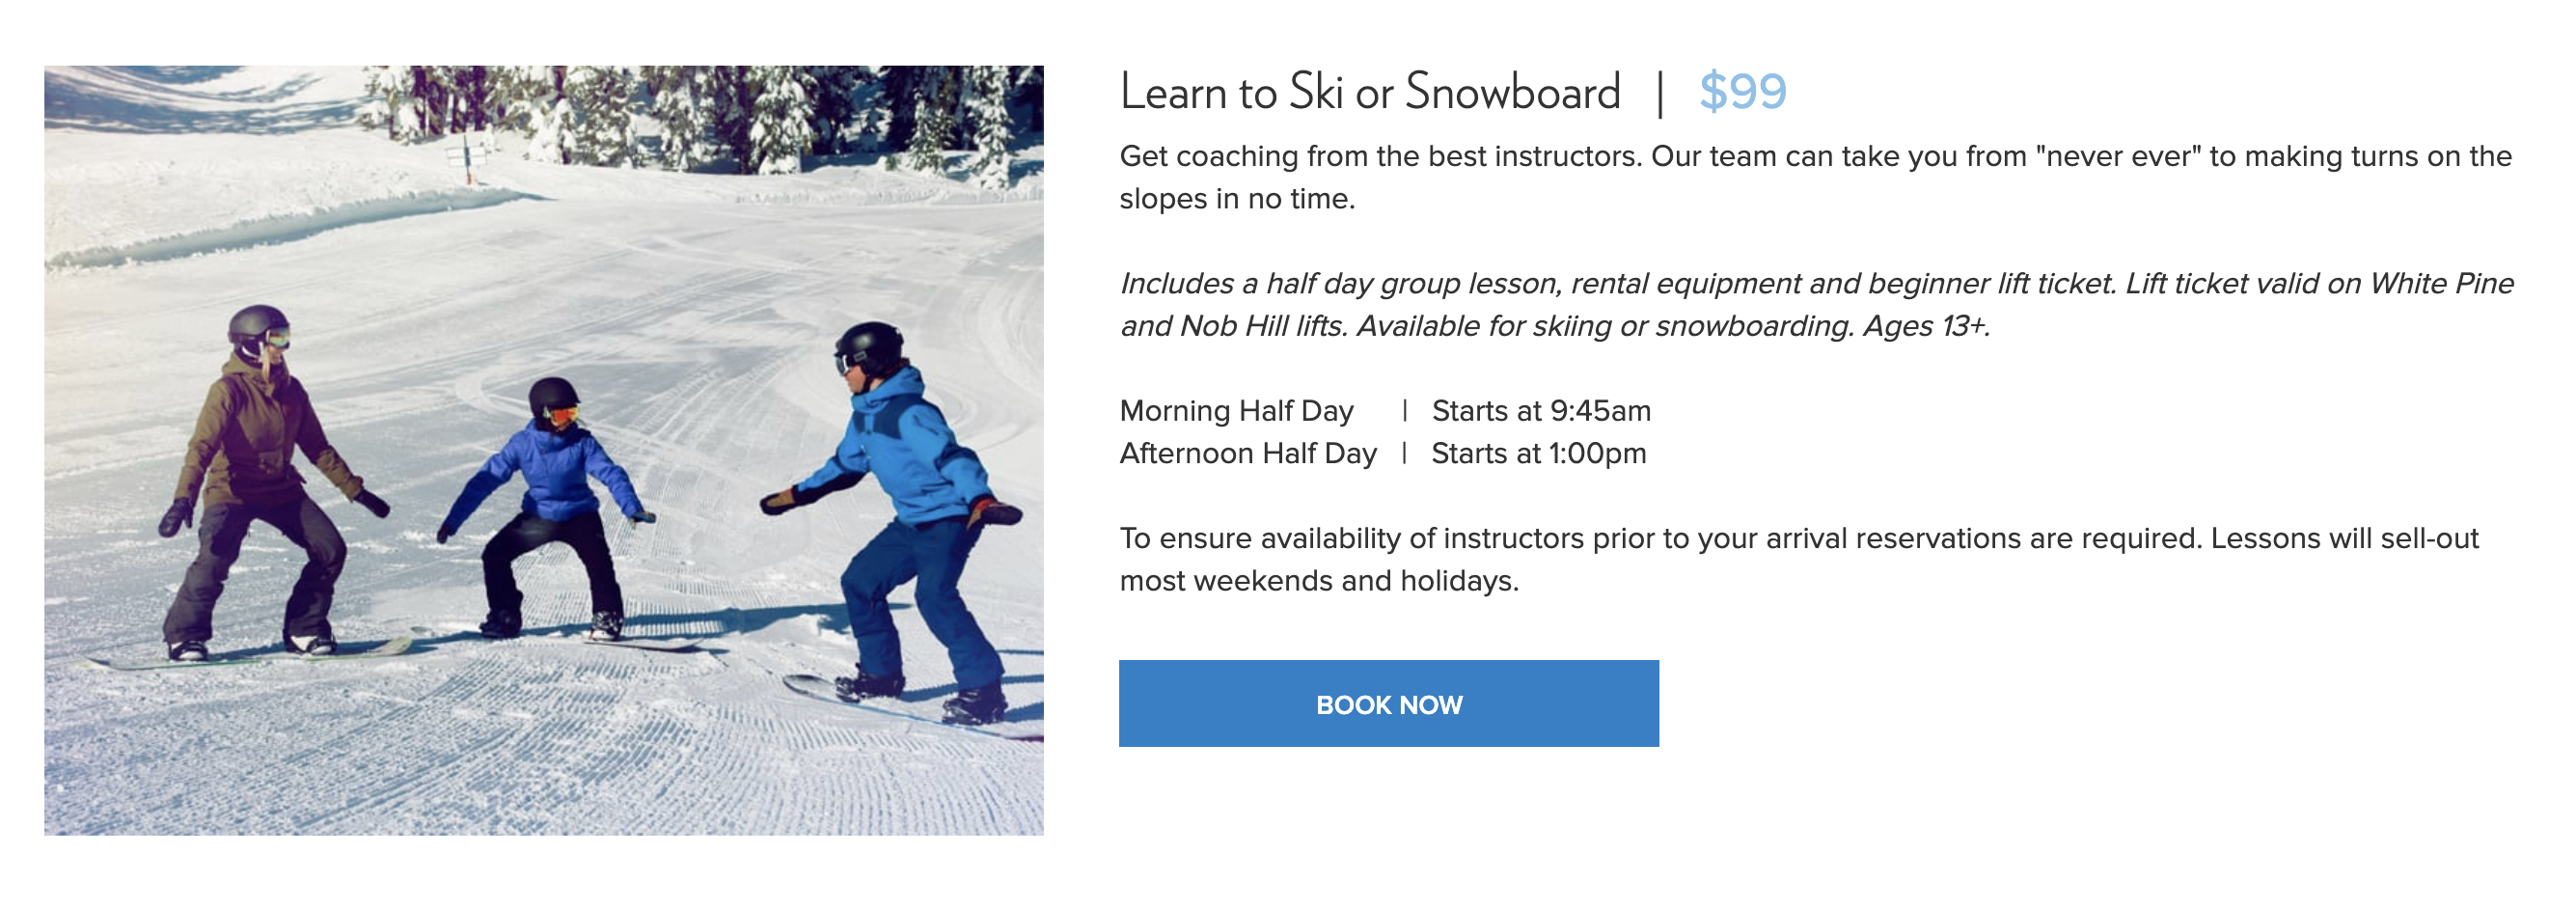 sugar-bowl-learn-ski-snowboard-deal